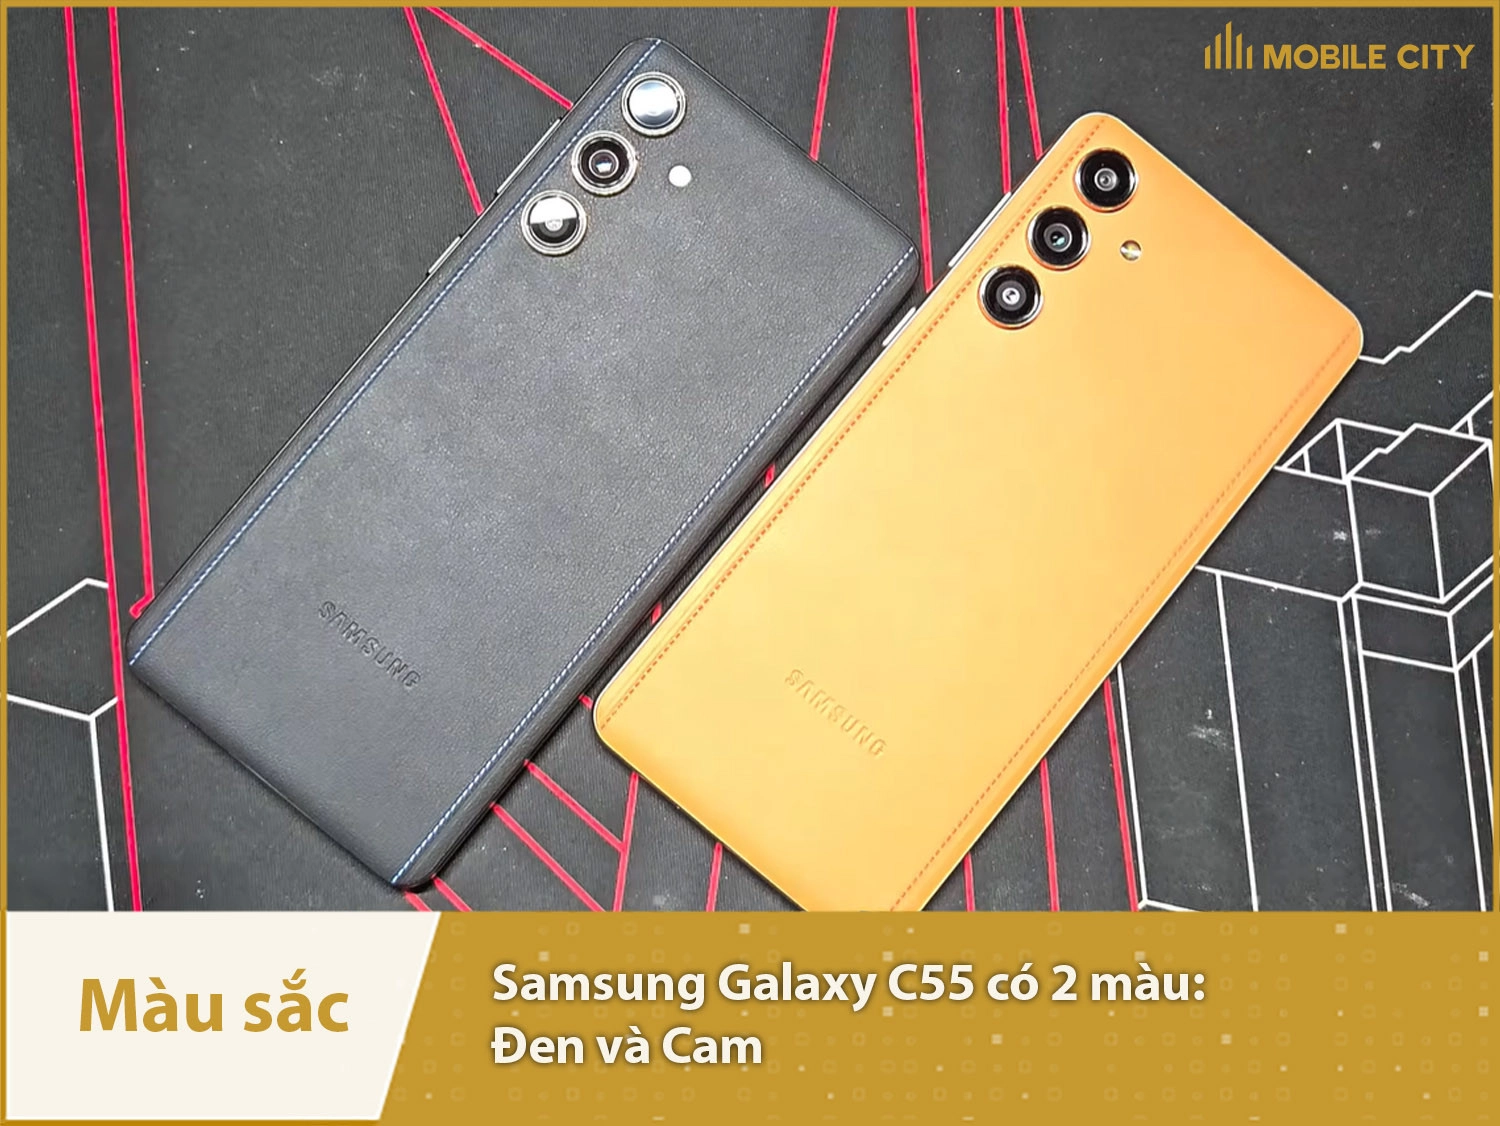 Samsung Galaxy C55 có 2 màu sắc gồm Cam và Đen